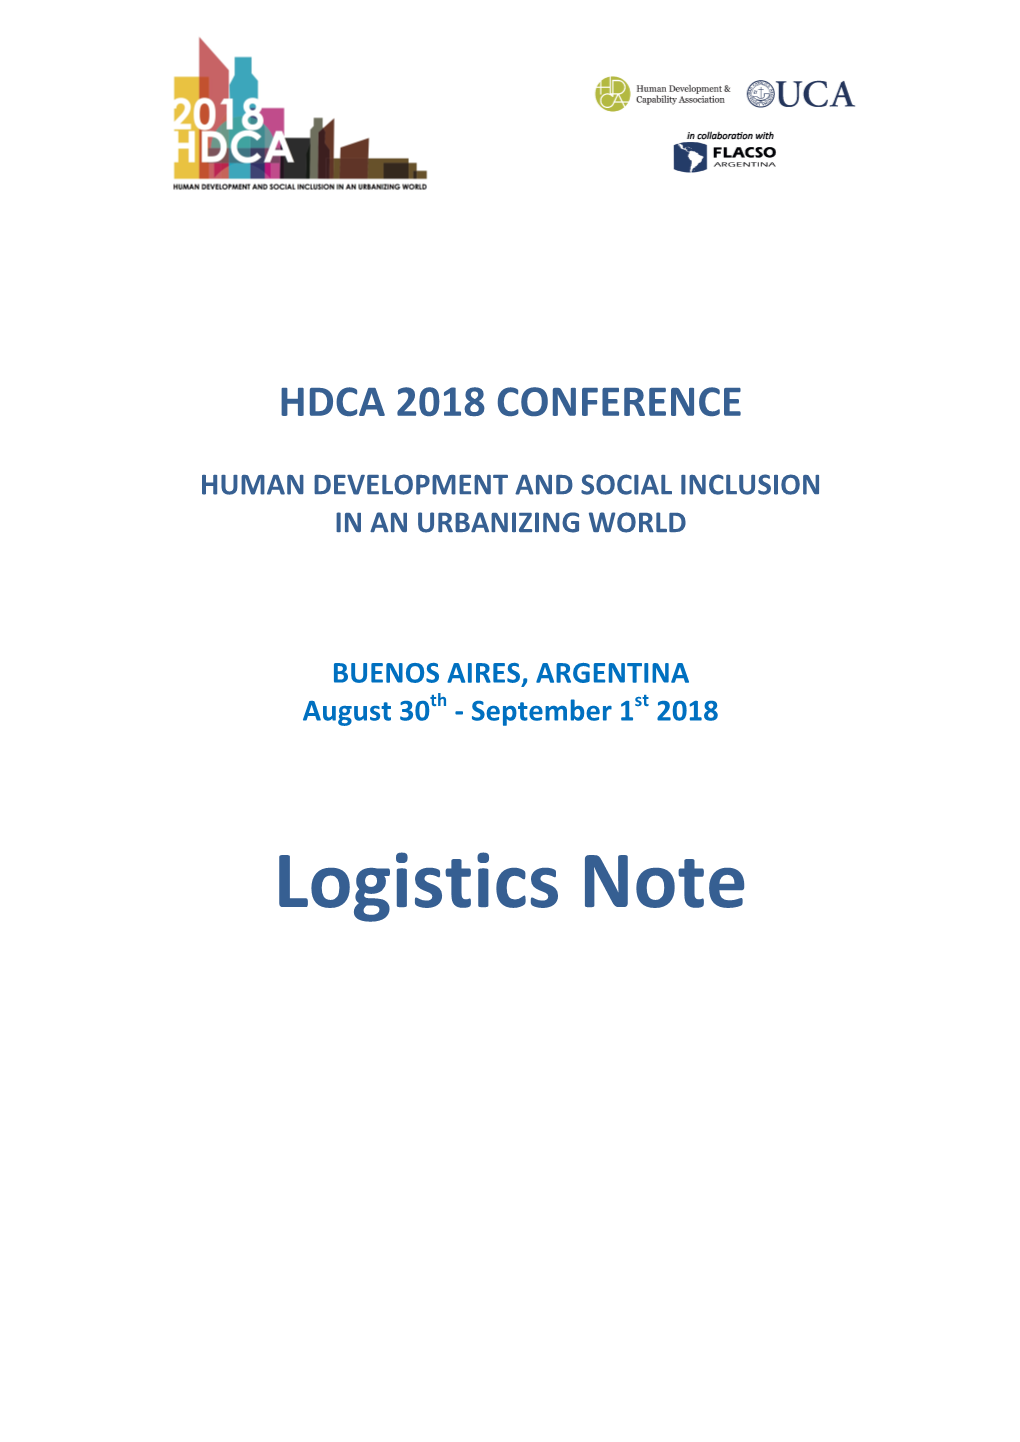 Logistics-Note-HDCA-2018.Pdf